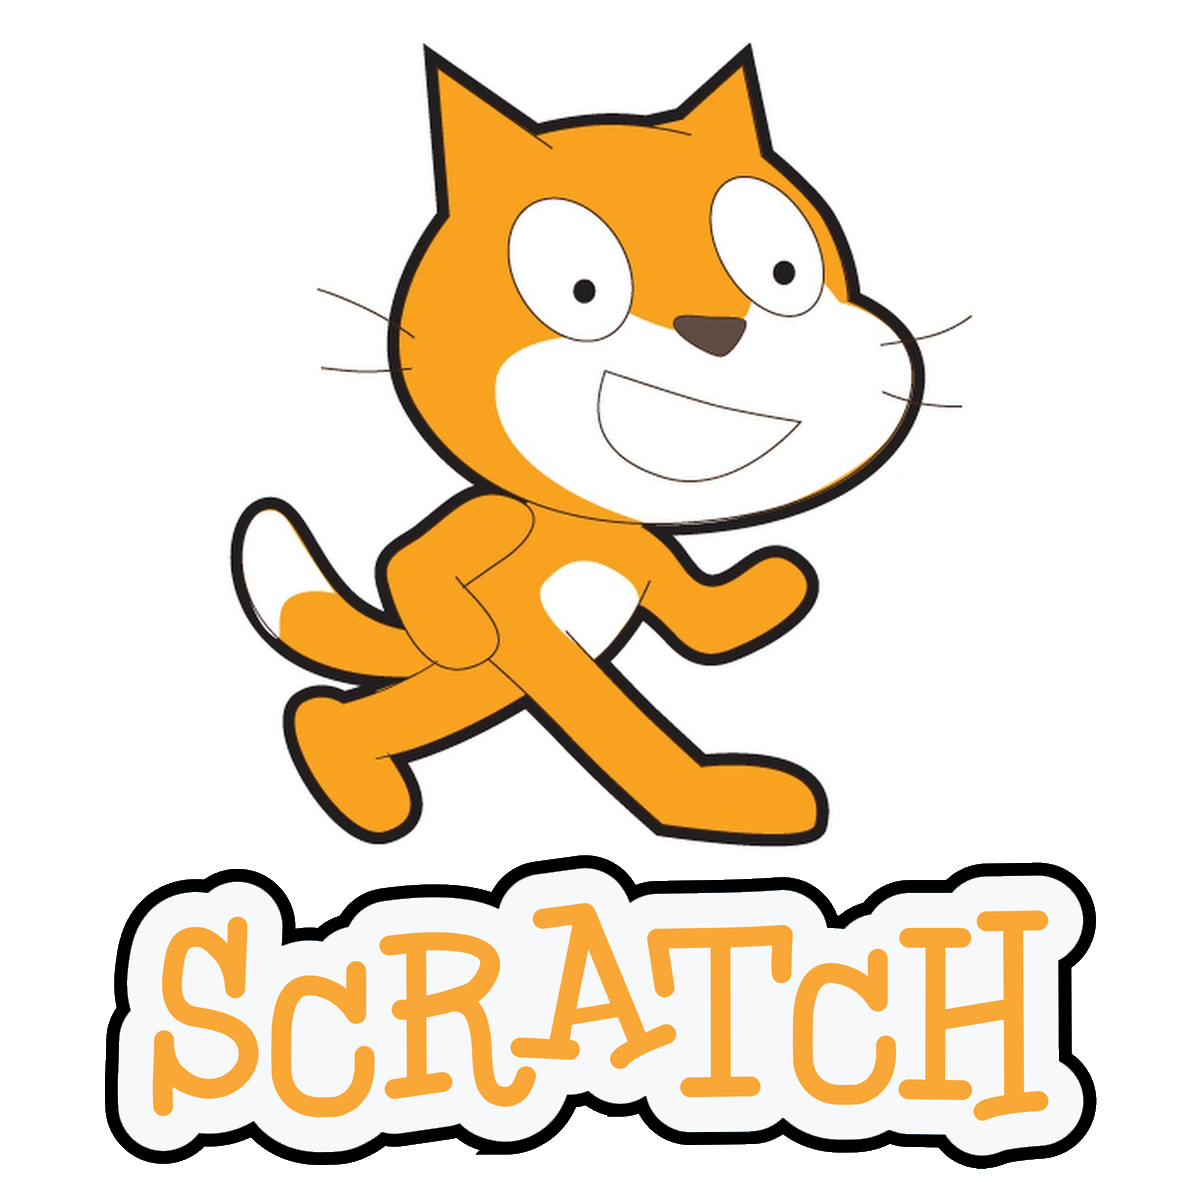 Крутой скретч. Программа Scratch логотип. Scratch логотип 3.0. Скретч кот. Скретч 2.